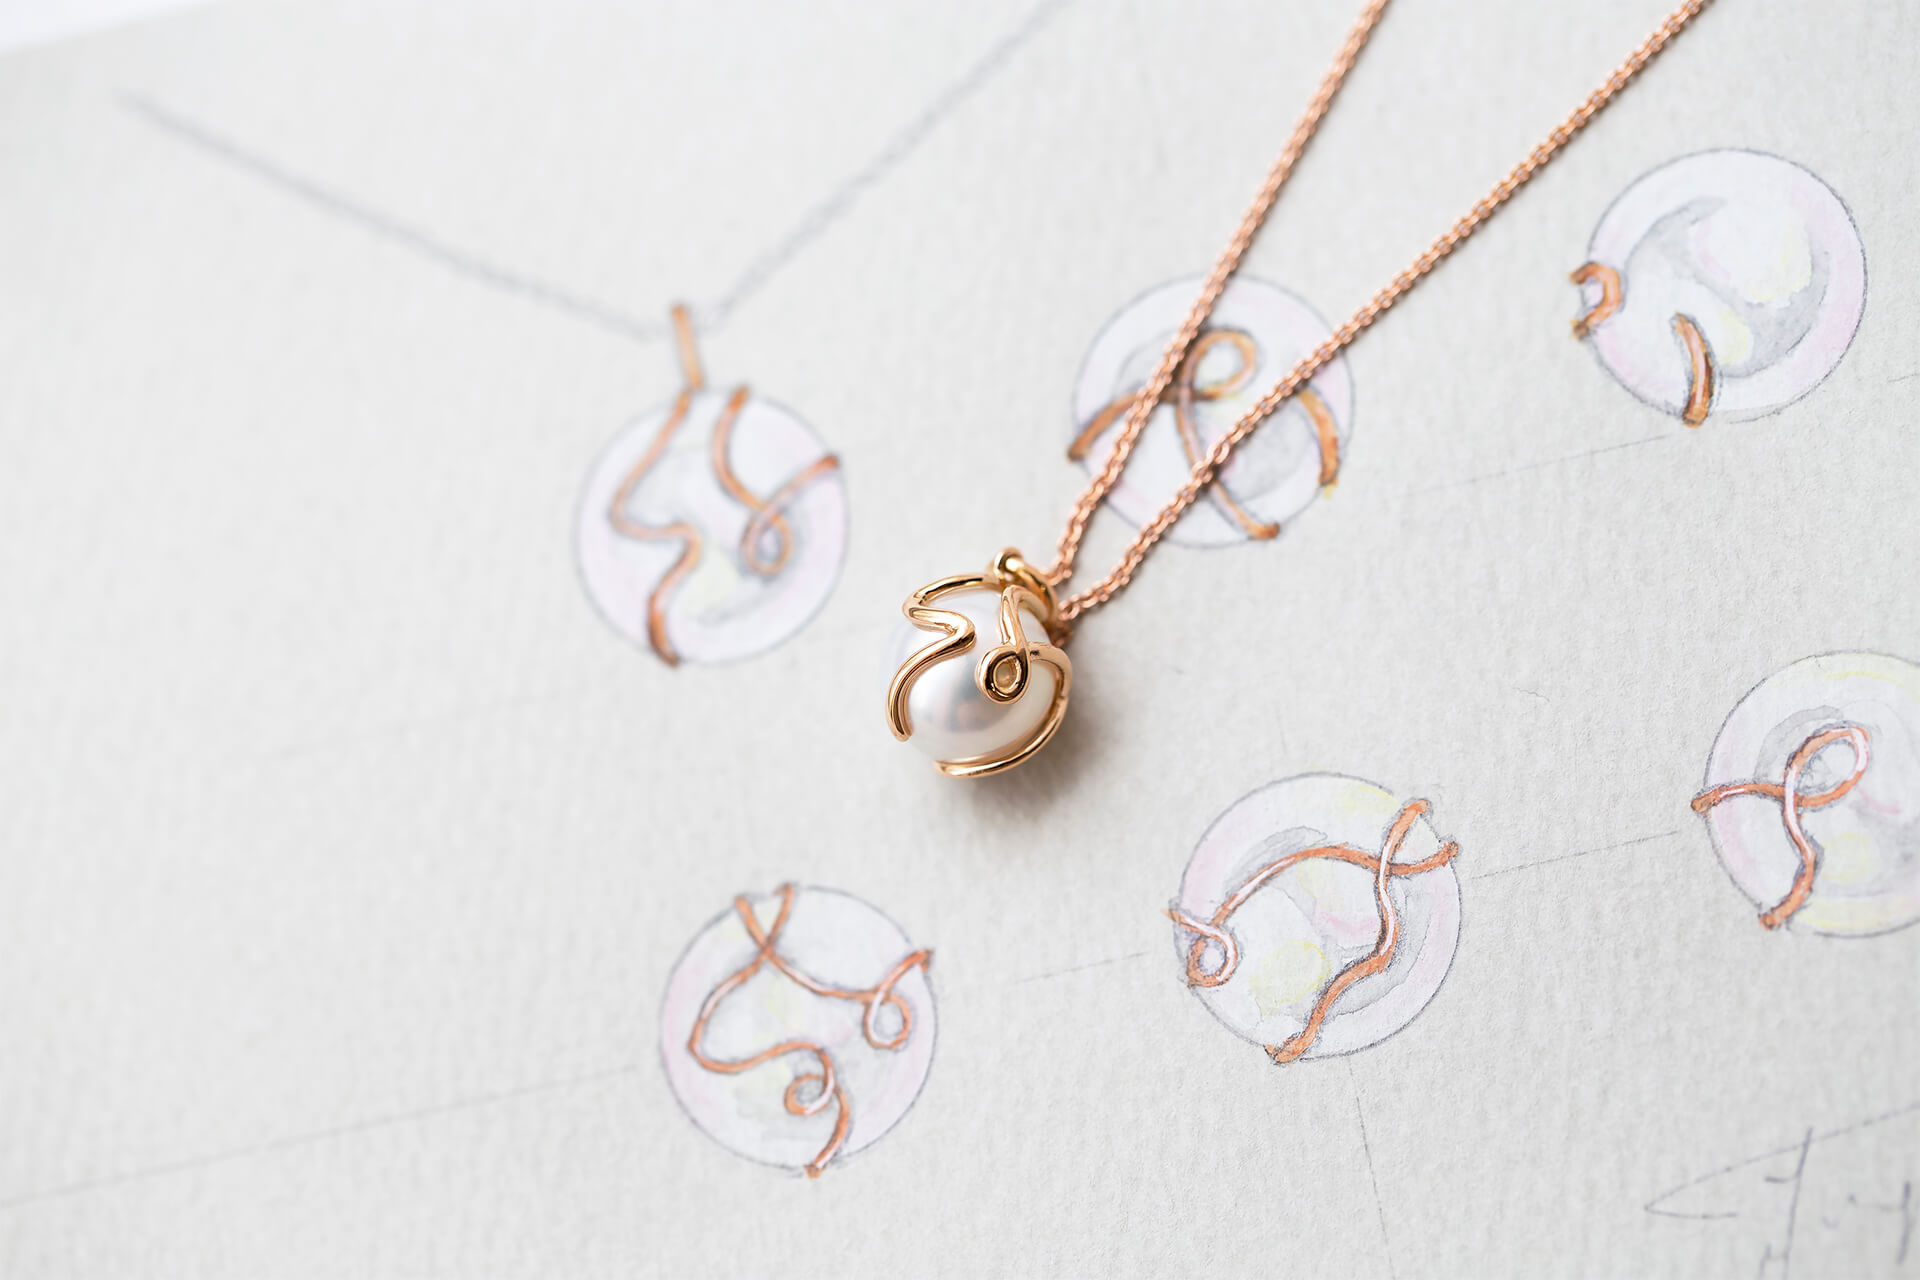 以一筆成形的方式完成不具像的兔子輪廓，18K玫瑰金與南洋珠的結合，成功呈現出送給媽媽溫暖且細膩的生日禮物。